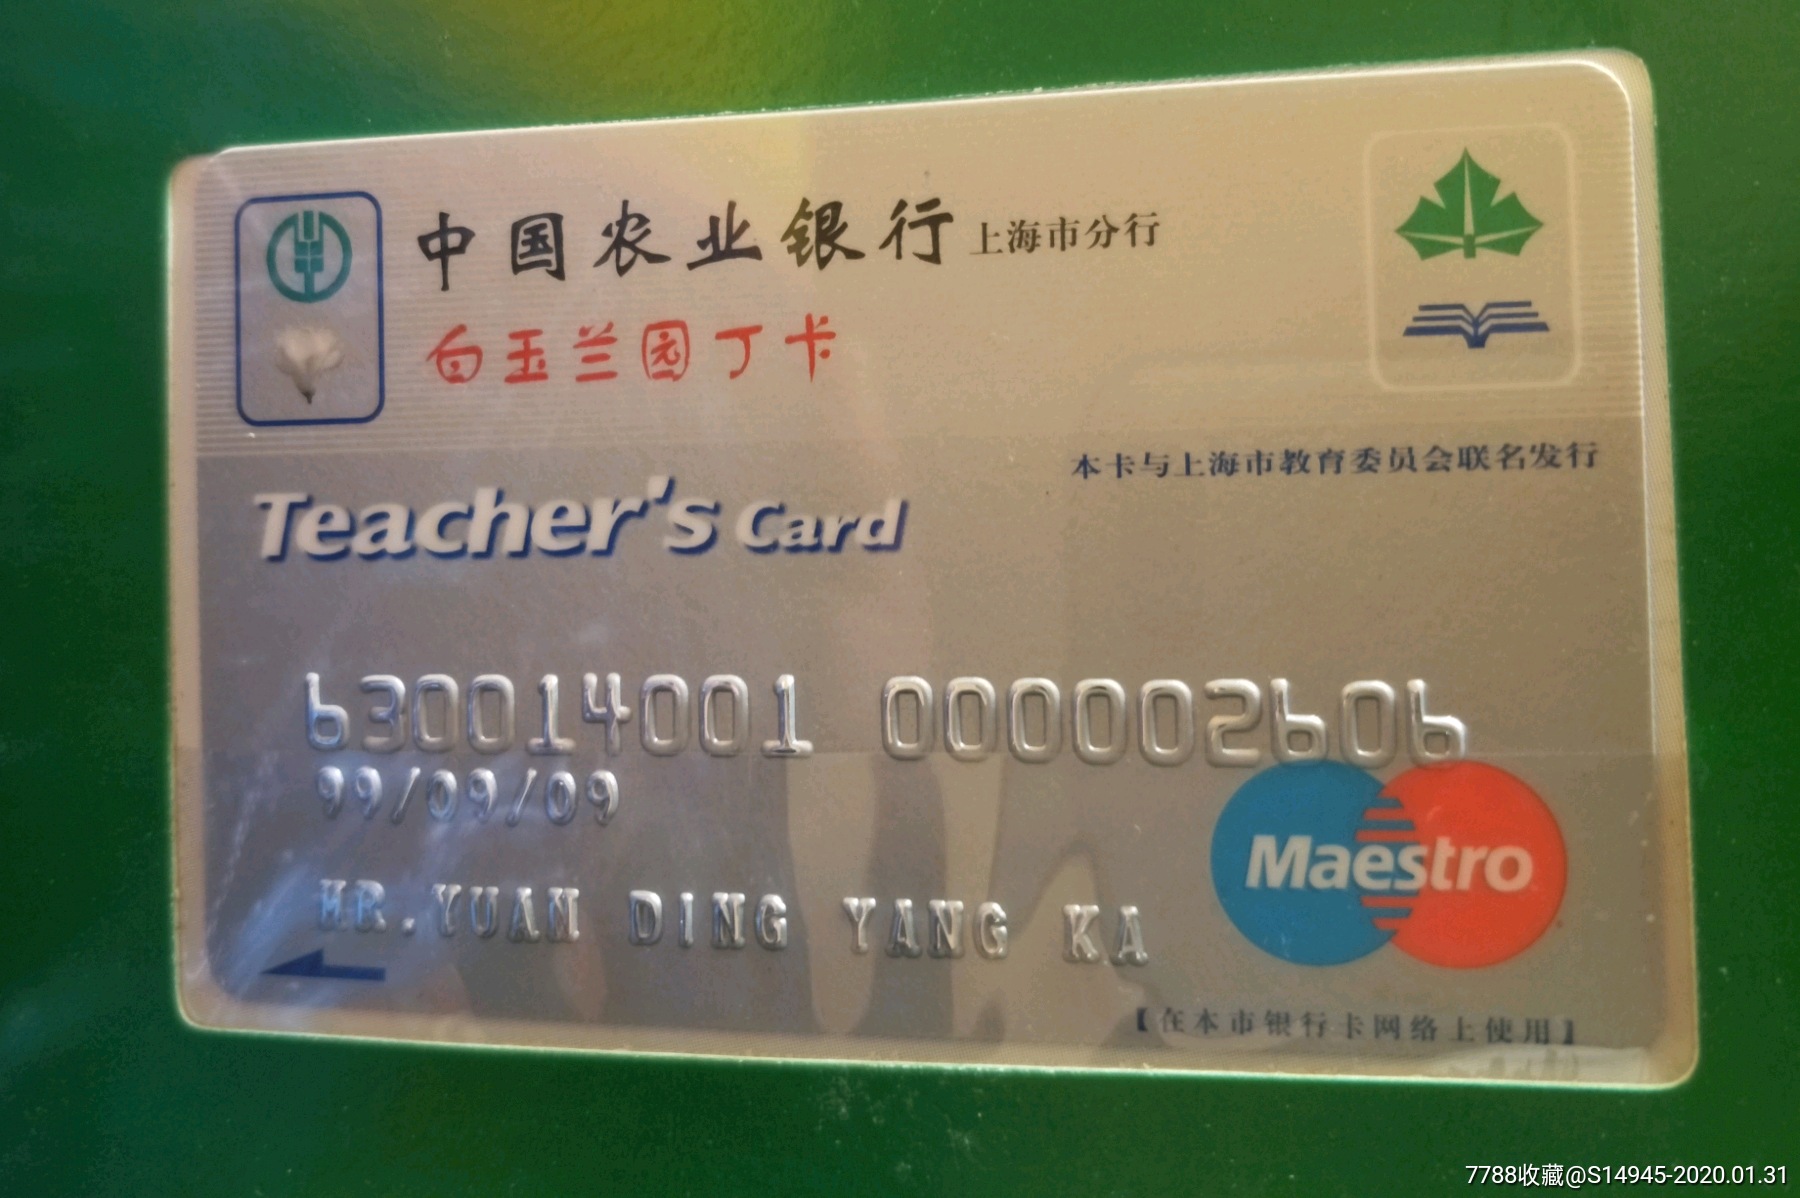 中国农业银行上海分行纪念卡一册